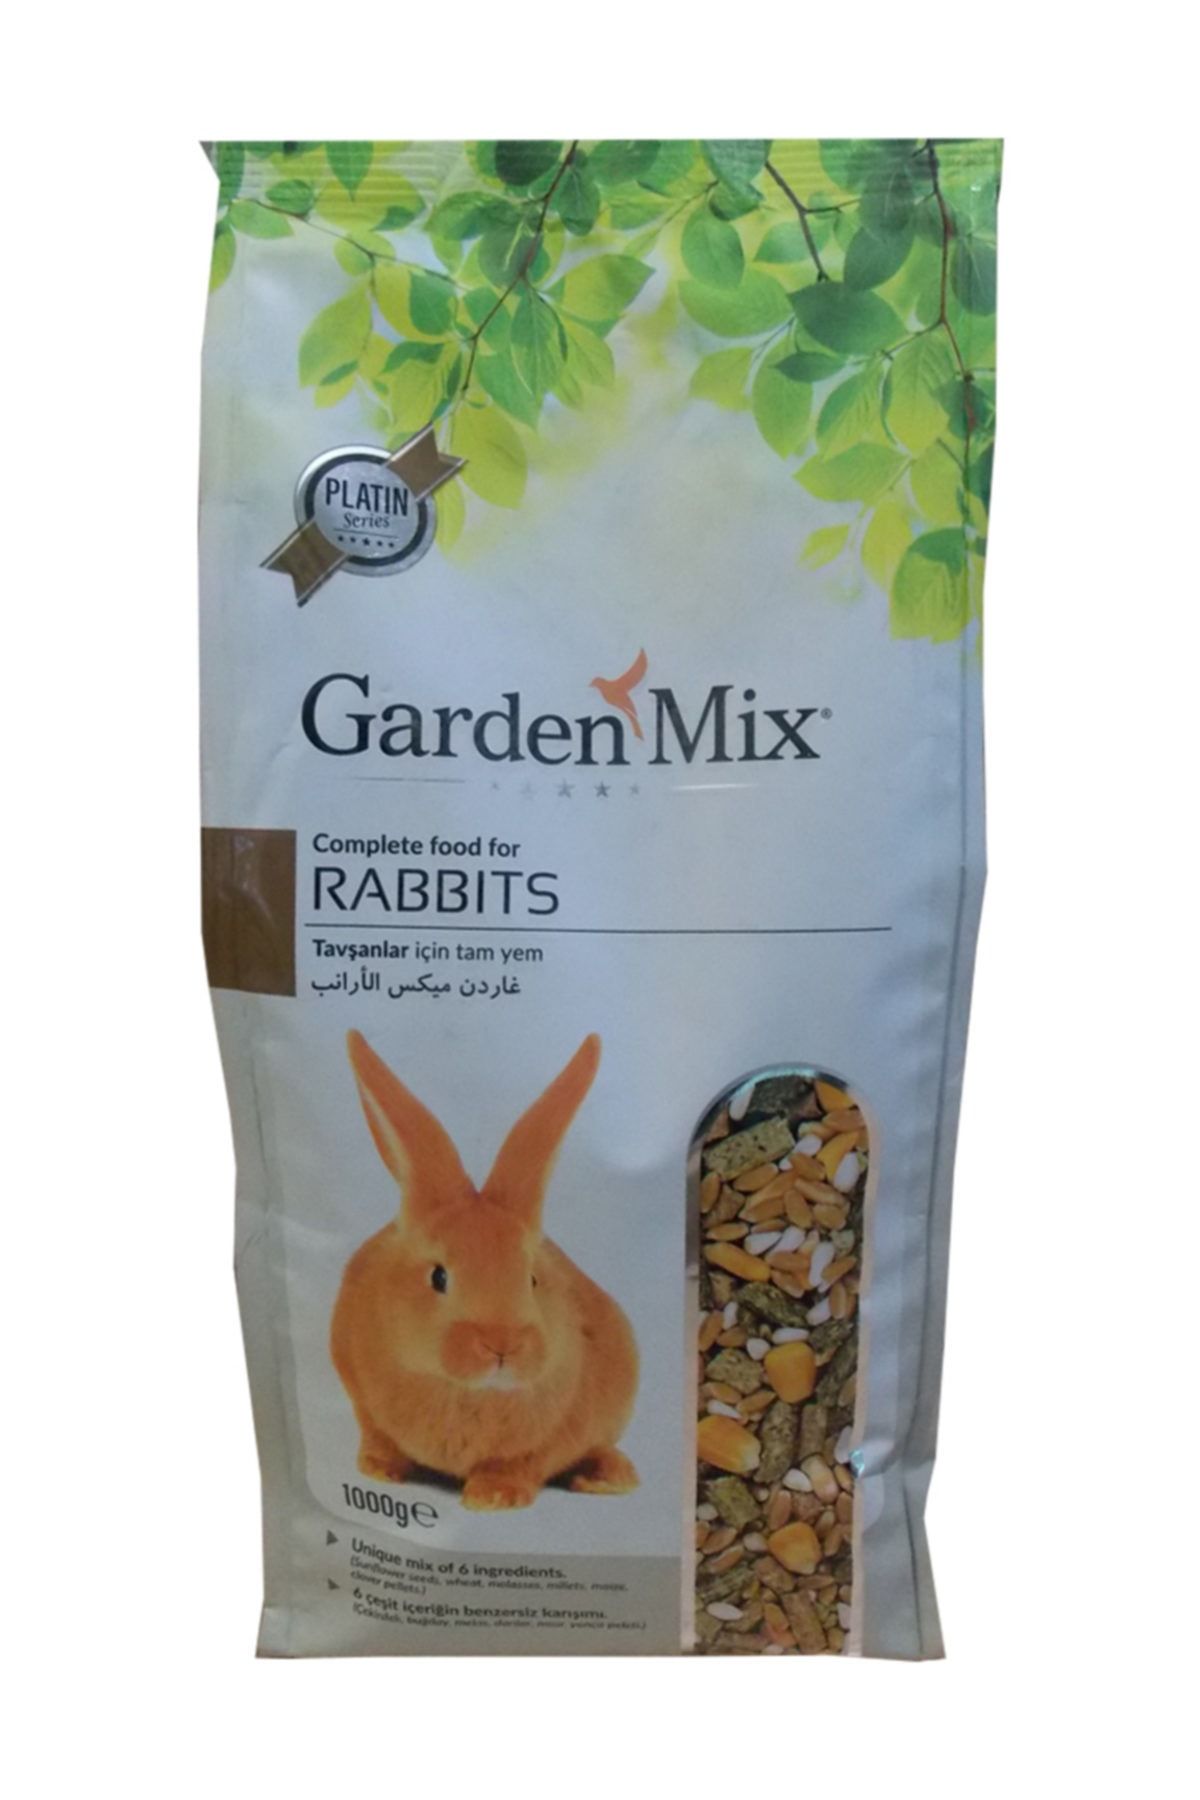 Gardenmix Platin Seri Tavşan Yemi 1 kg ( 10 Adet )